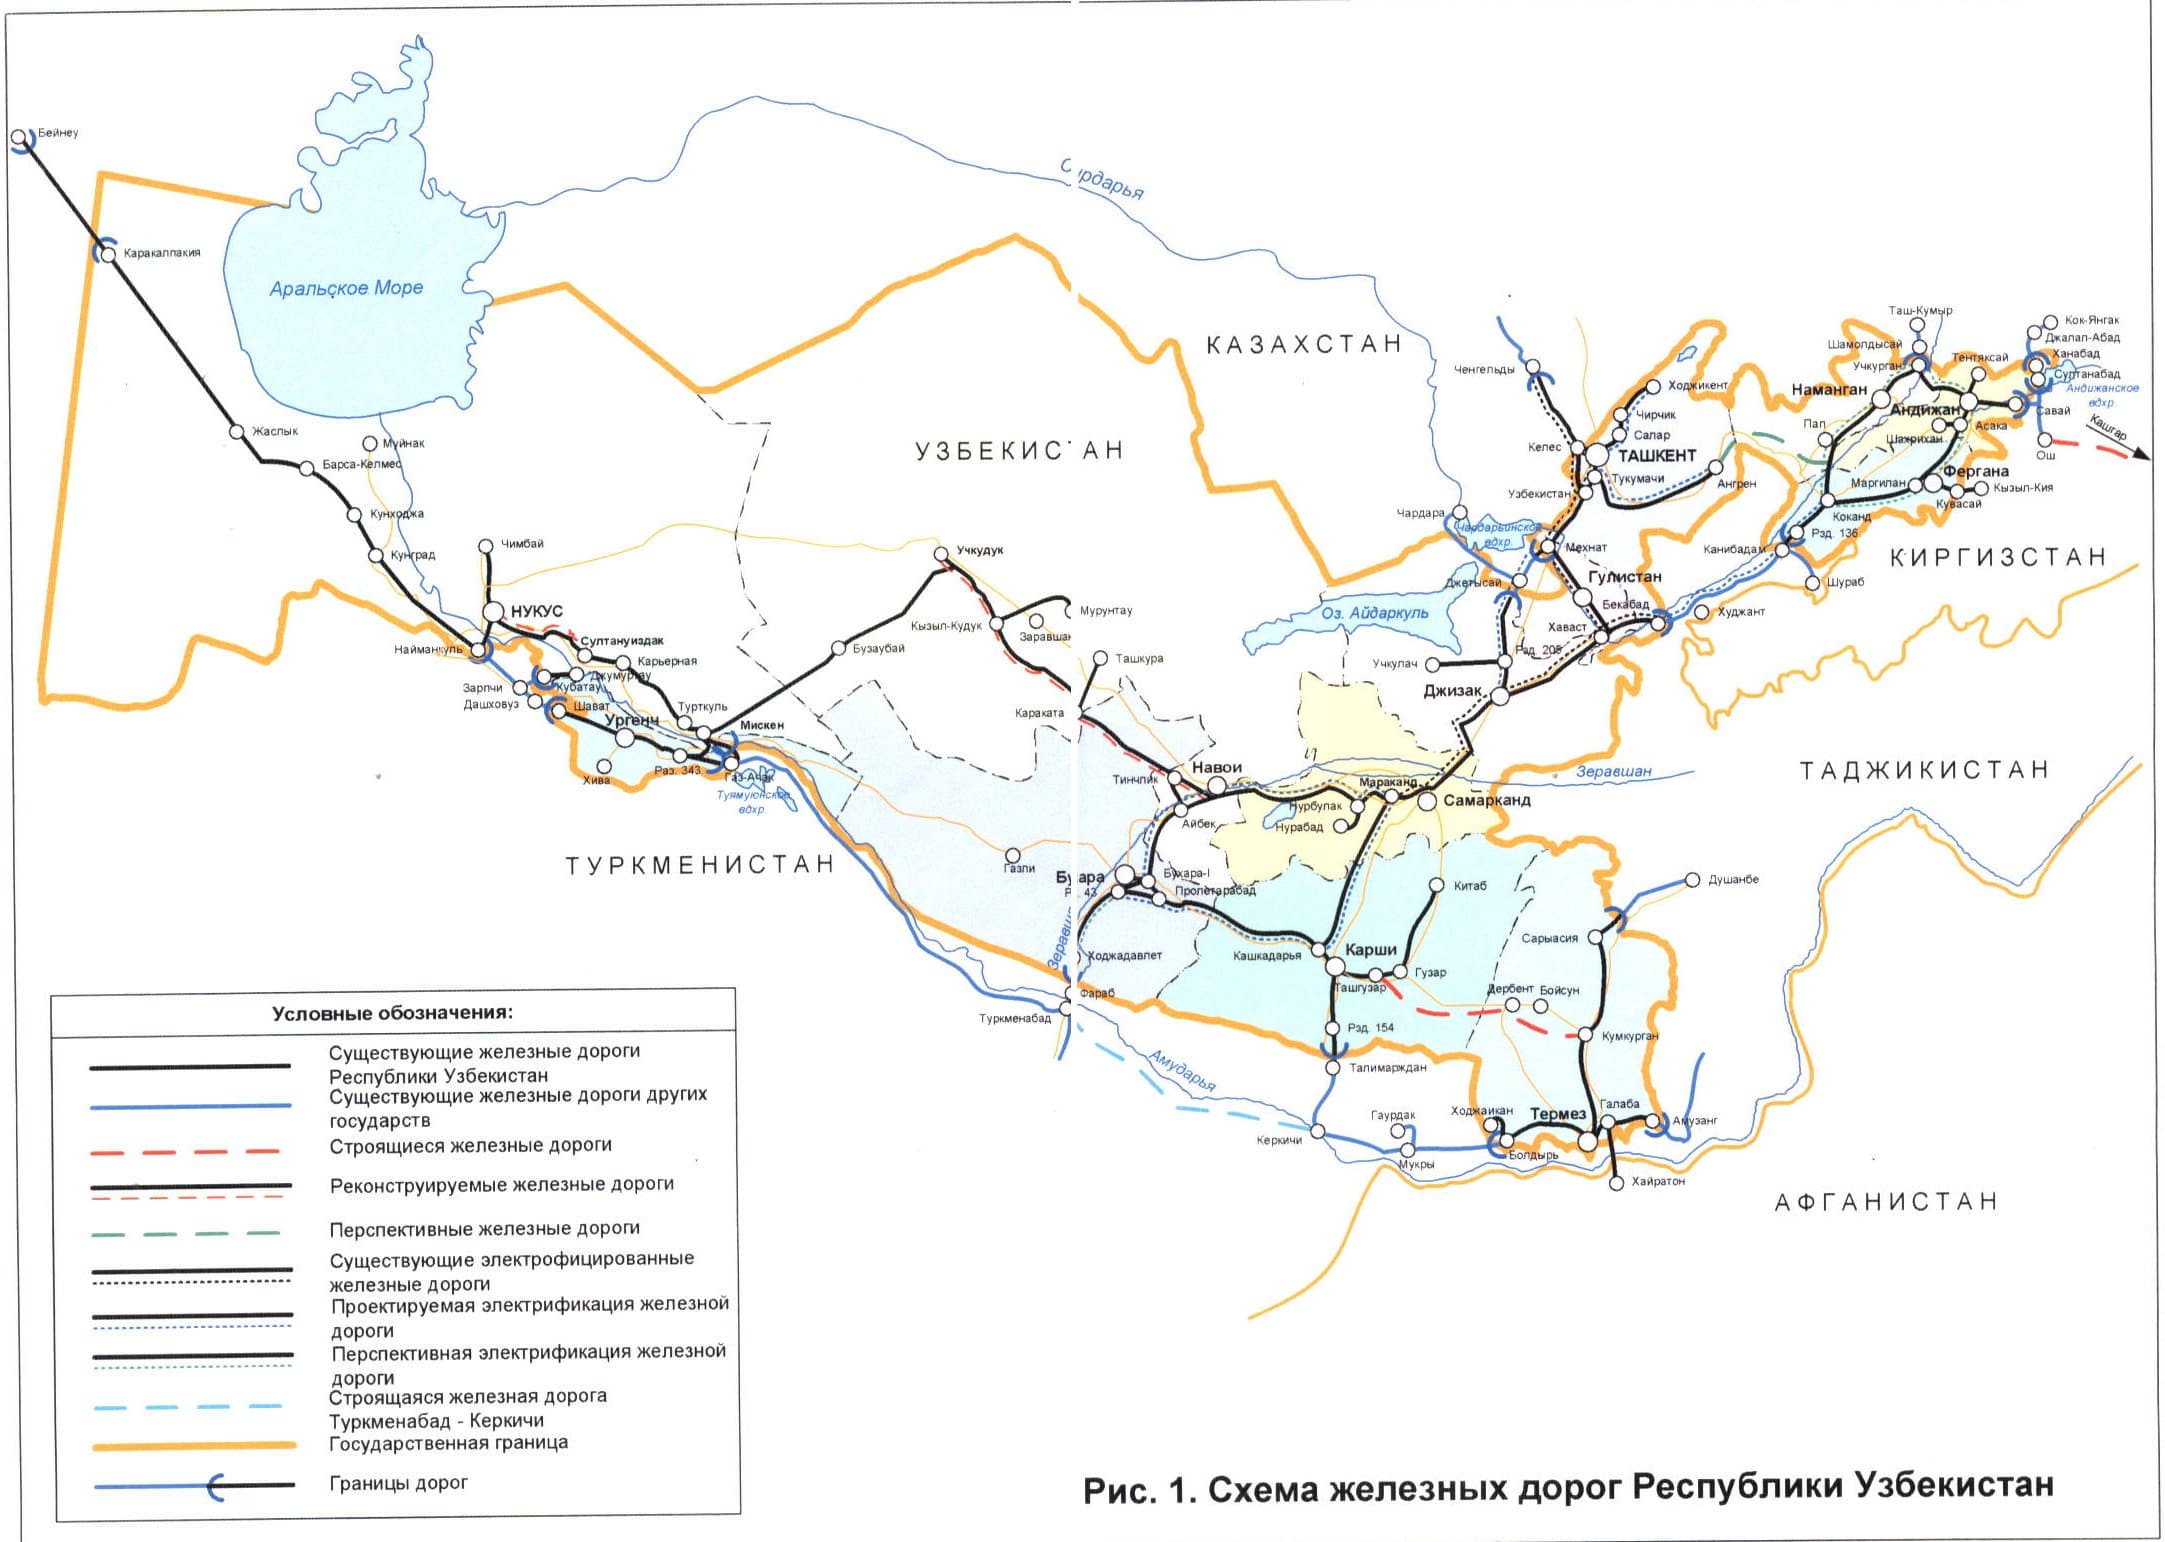 Карта - схема железных дорог Uzbek Railways. Вокзалы. Справочные телефоны